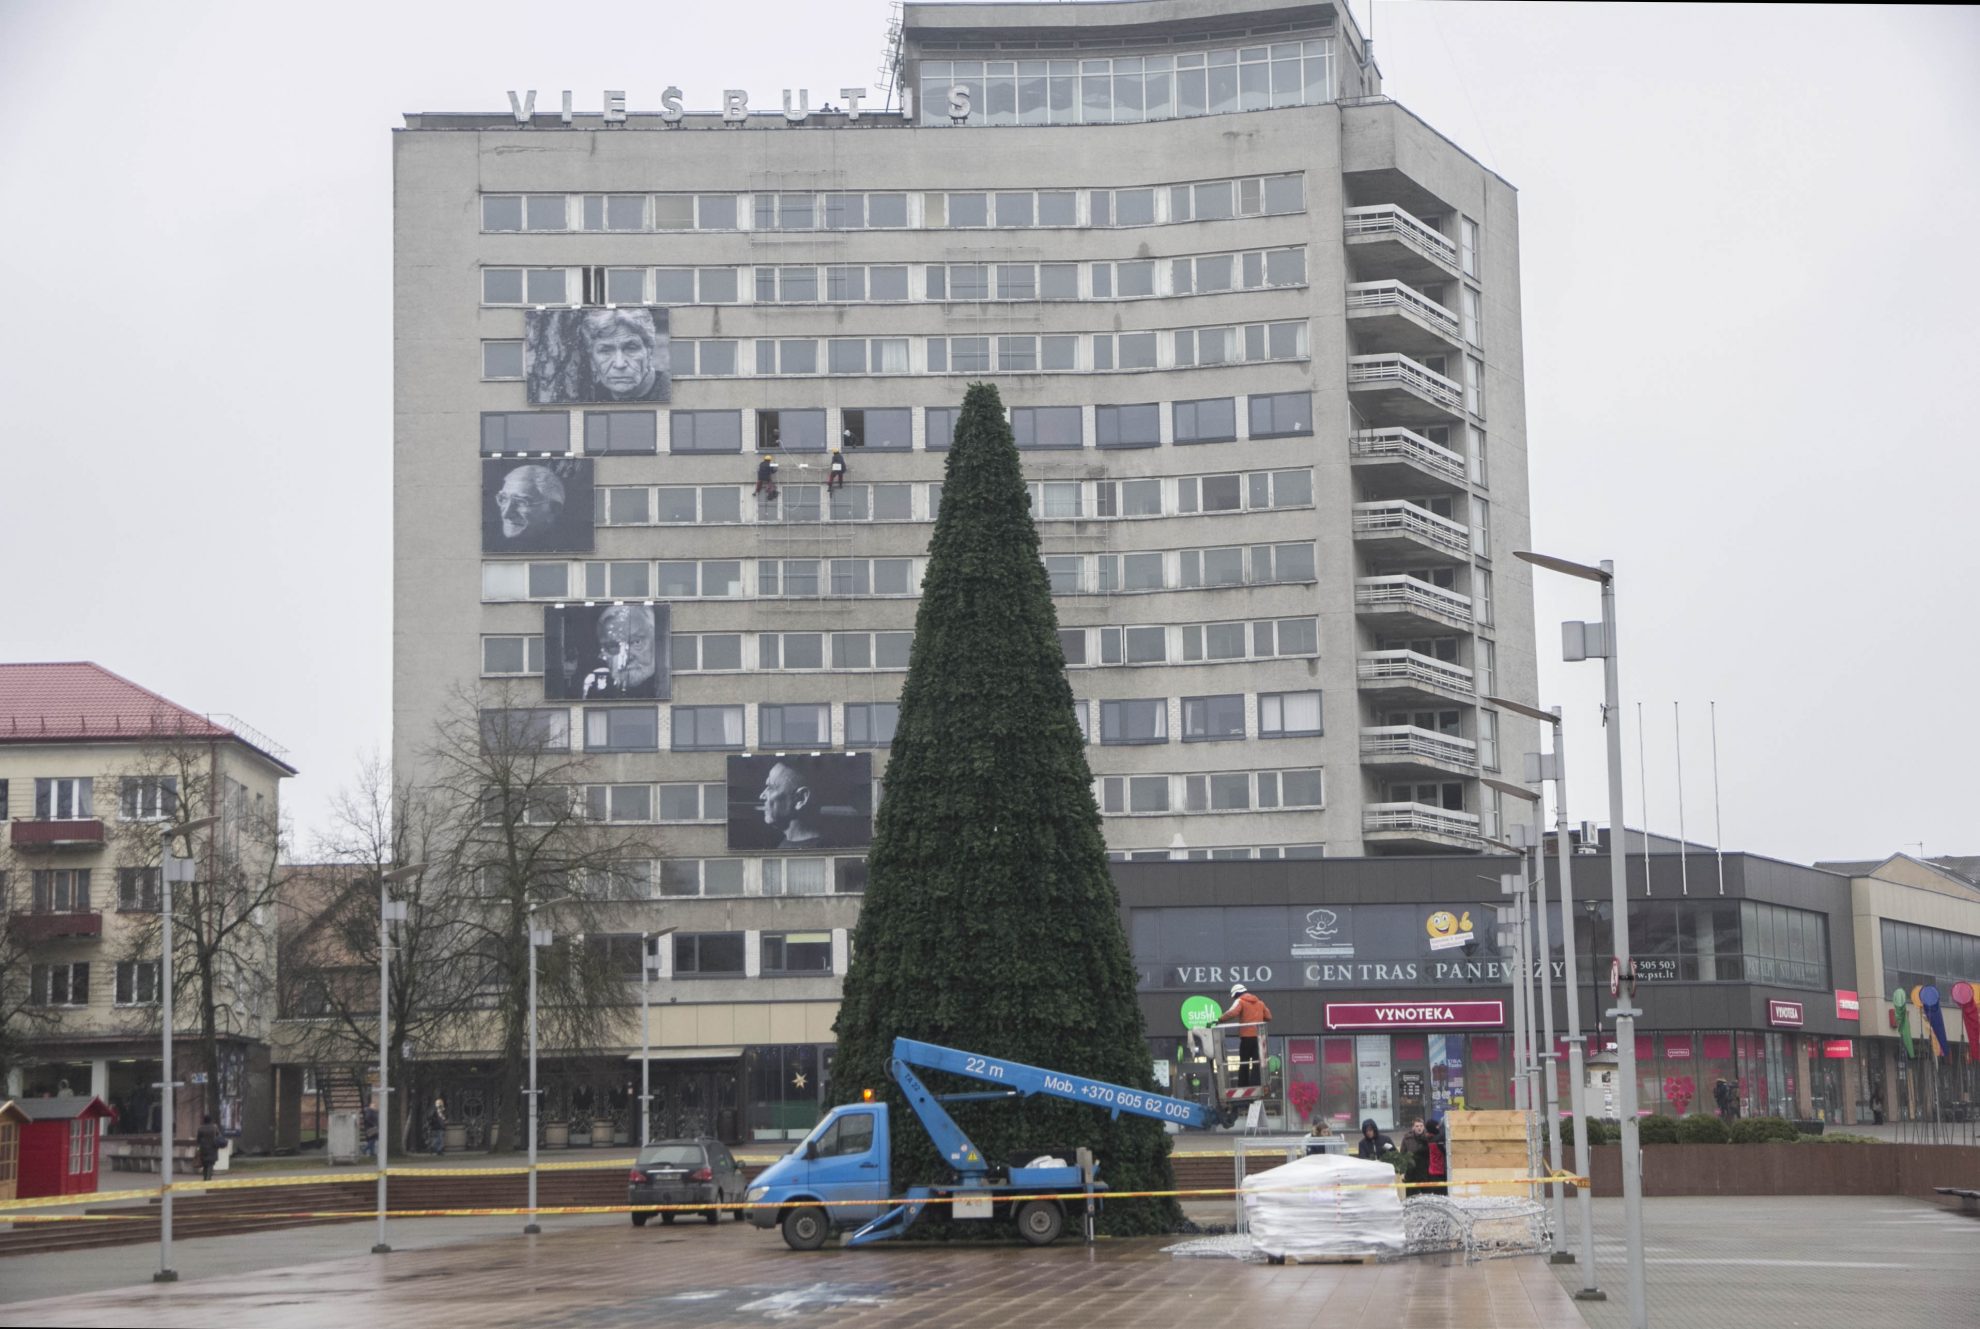 Laikrodis skaičiuoja paskutinius dūžius, kada Panevėžyje oficialiai turėtų būti atidarytas kalėdinių renginių maratonas.